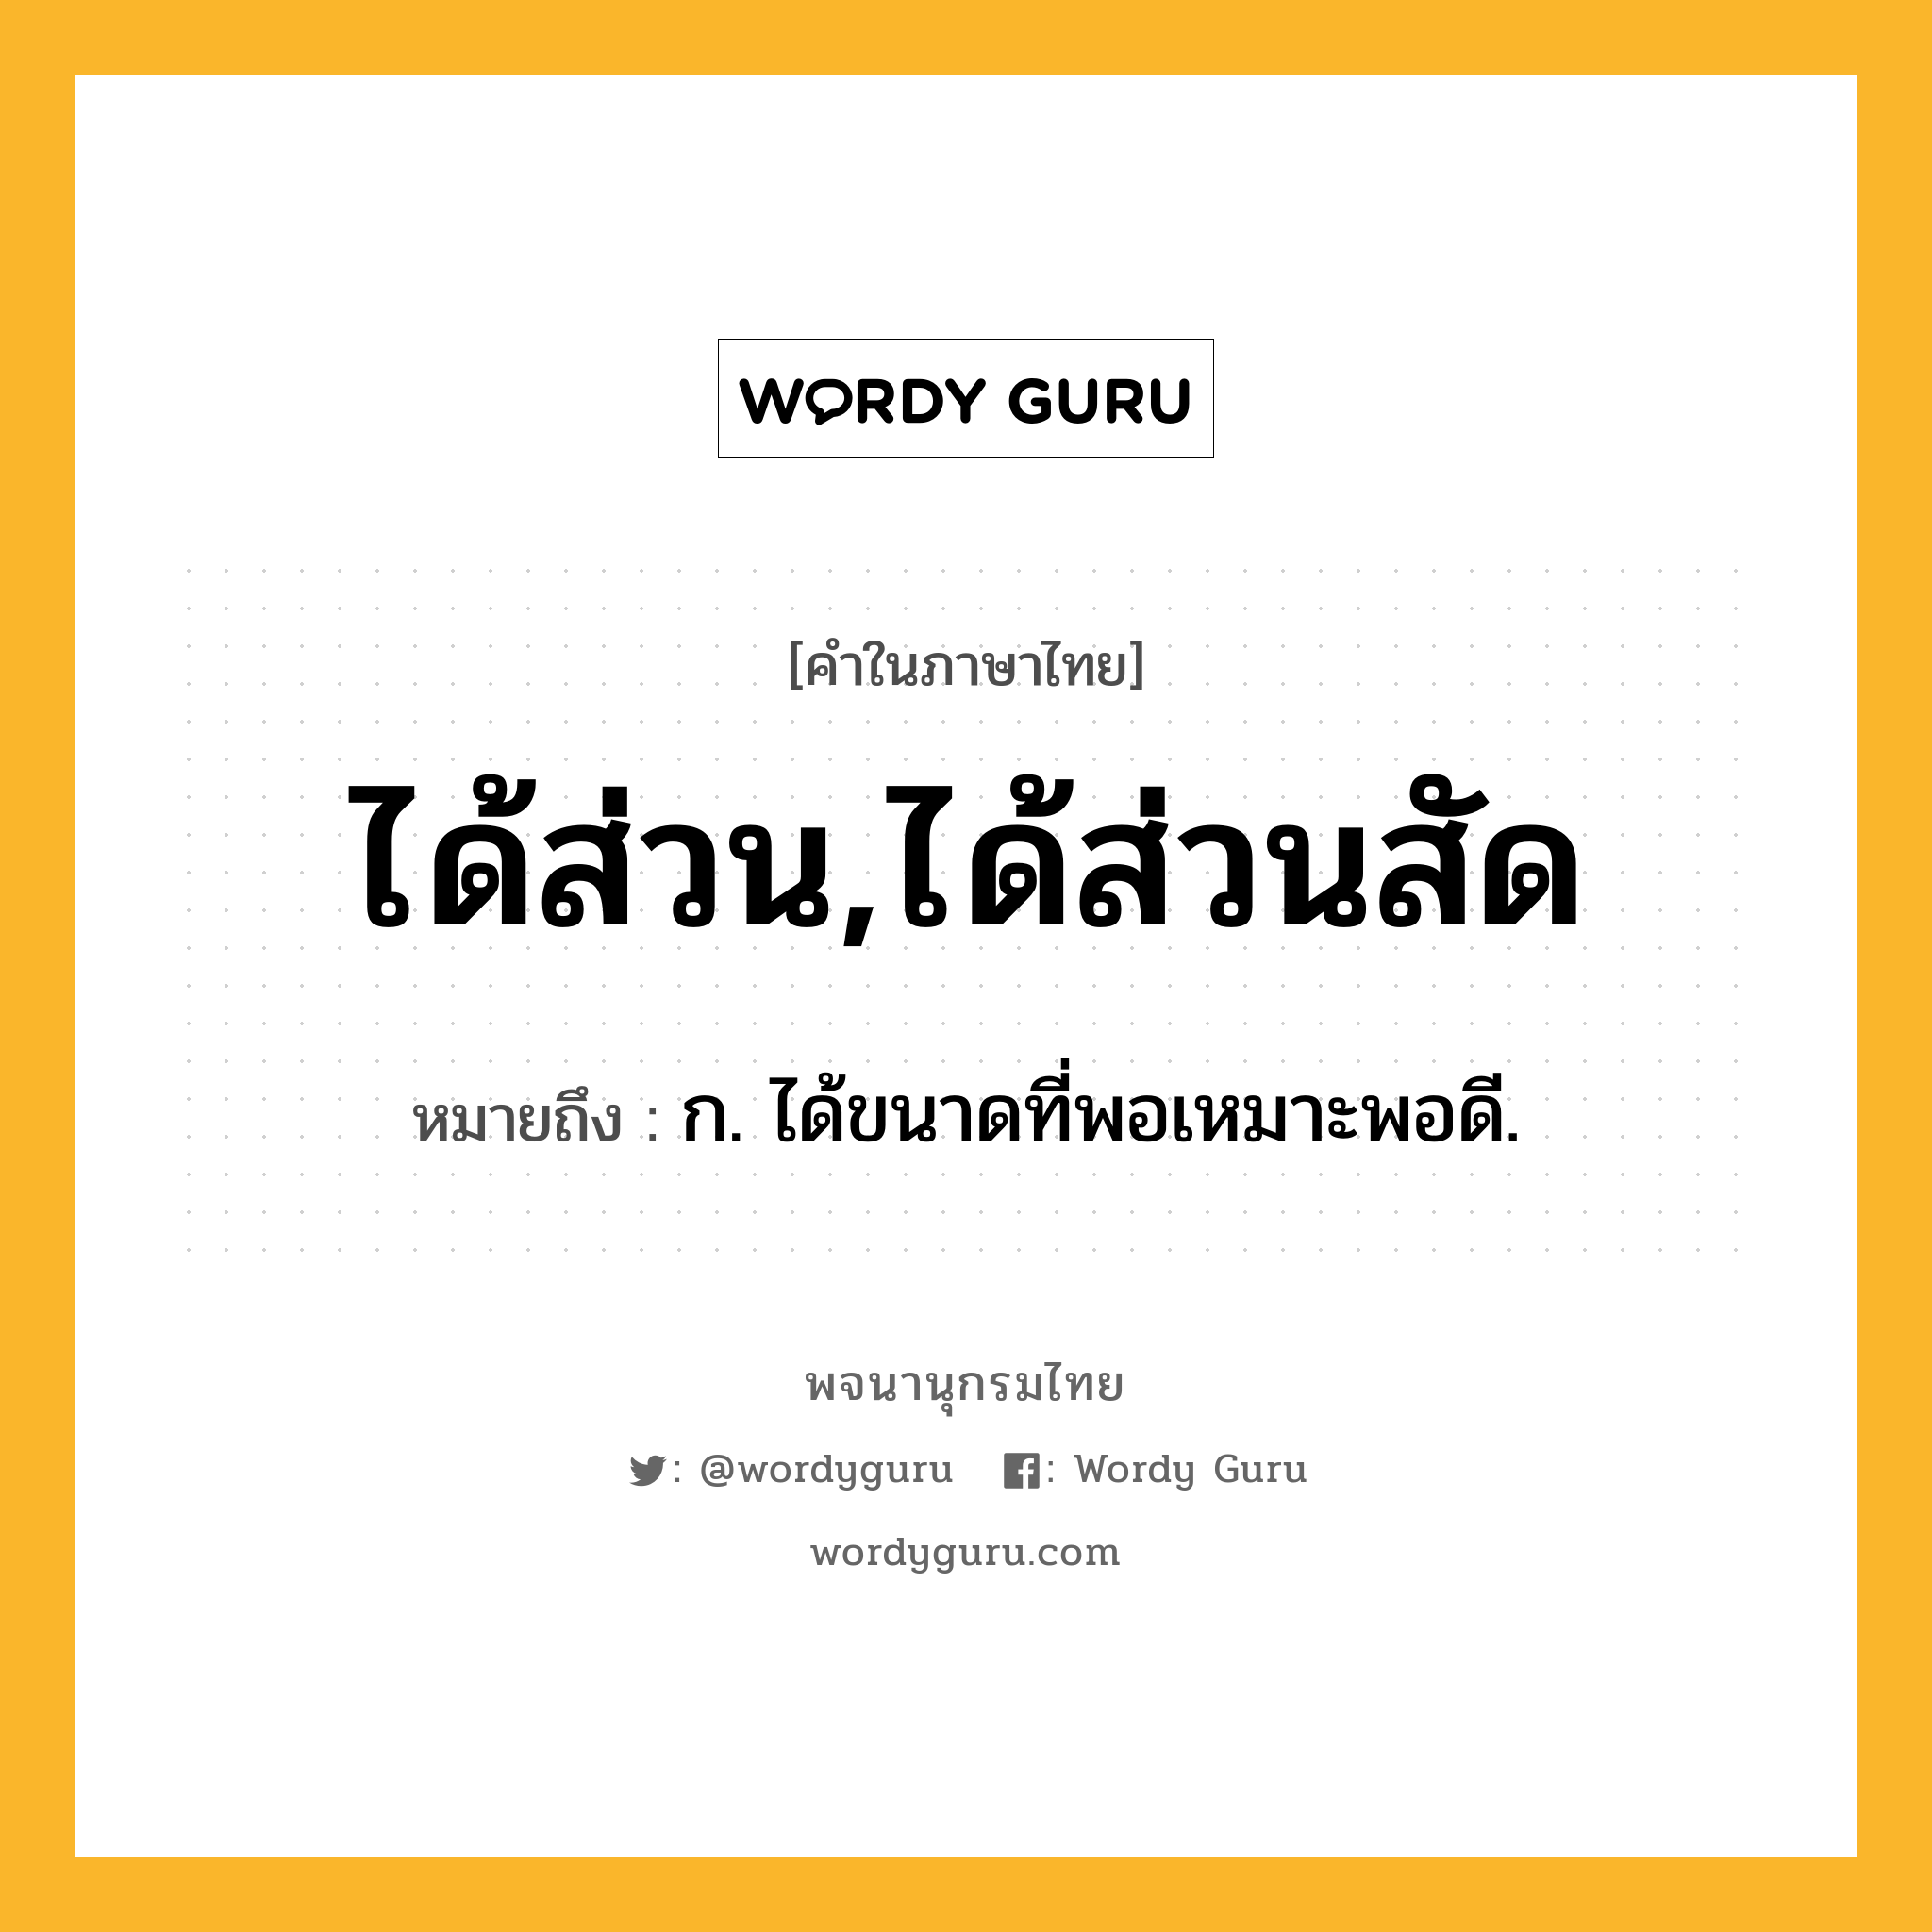 ได้ส่วน,ได้ส่วนสัด ความหมาย หมายถึงอะไร?, คำในภาษาไทย ได้ส่วน,ได้ส่วนสัด หมายถึง ก. ได้ขนาดที่พอเหมาะพอดี.